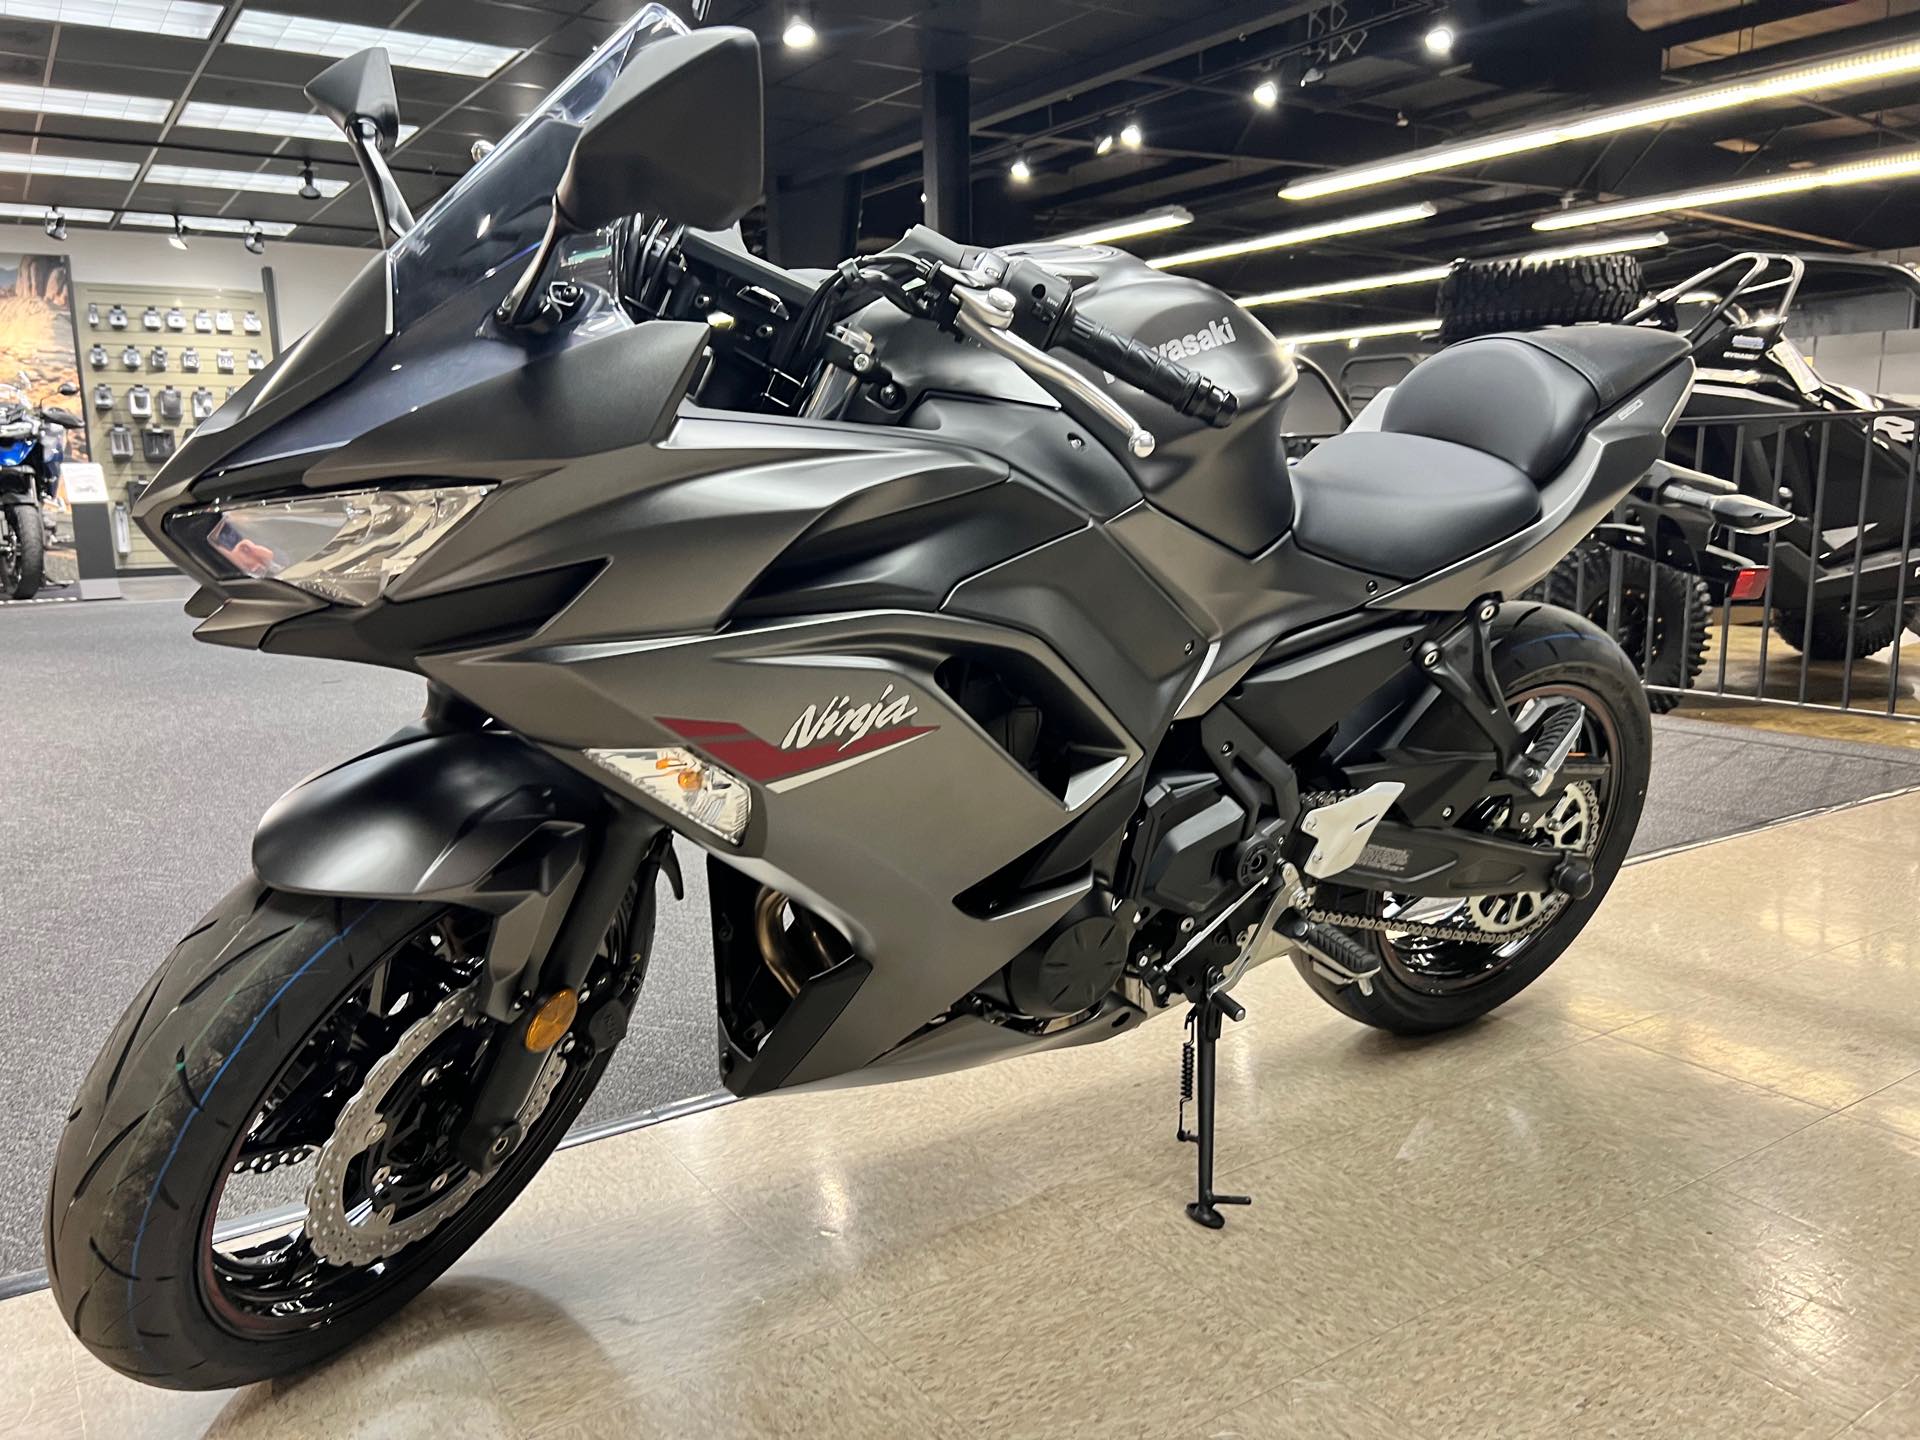 2022 Kawasaki Ninja 650 Base at Sloans Motorcycle ATV, Murfreesboro, TN, 37129